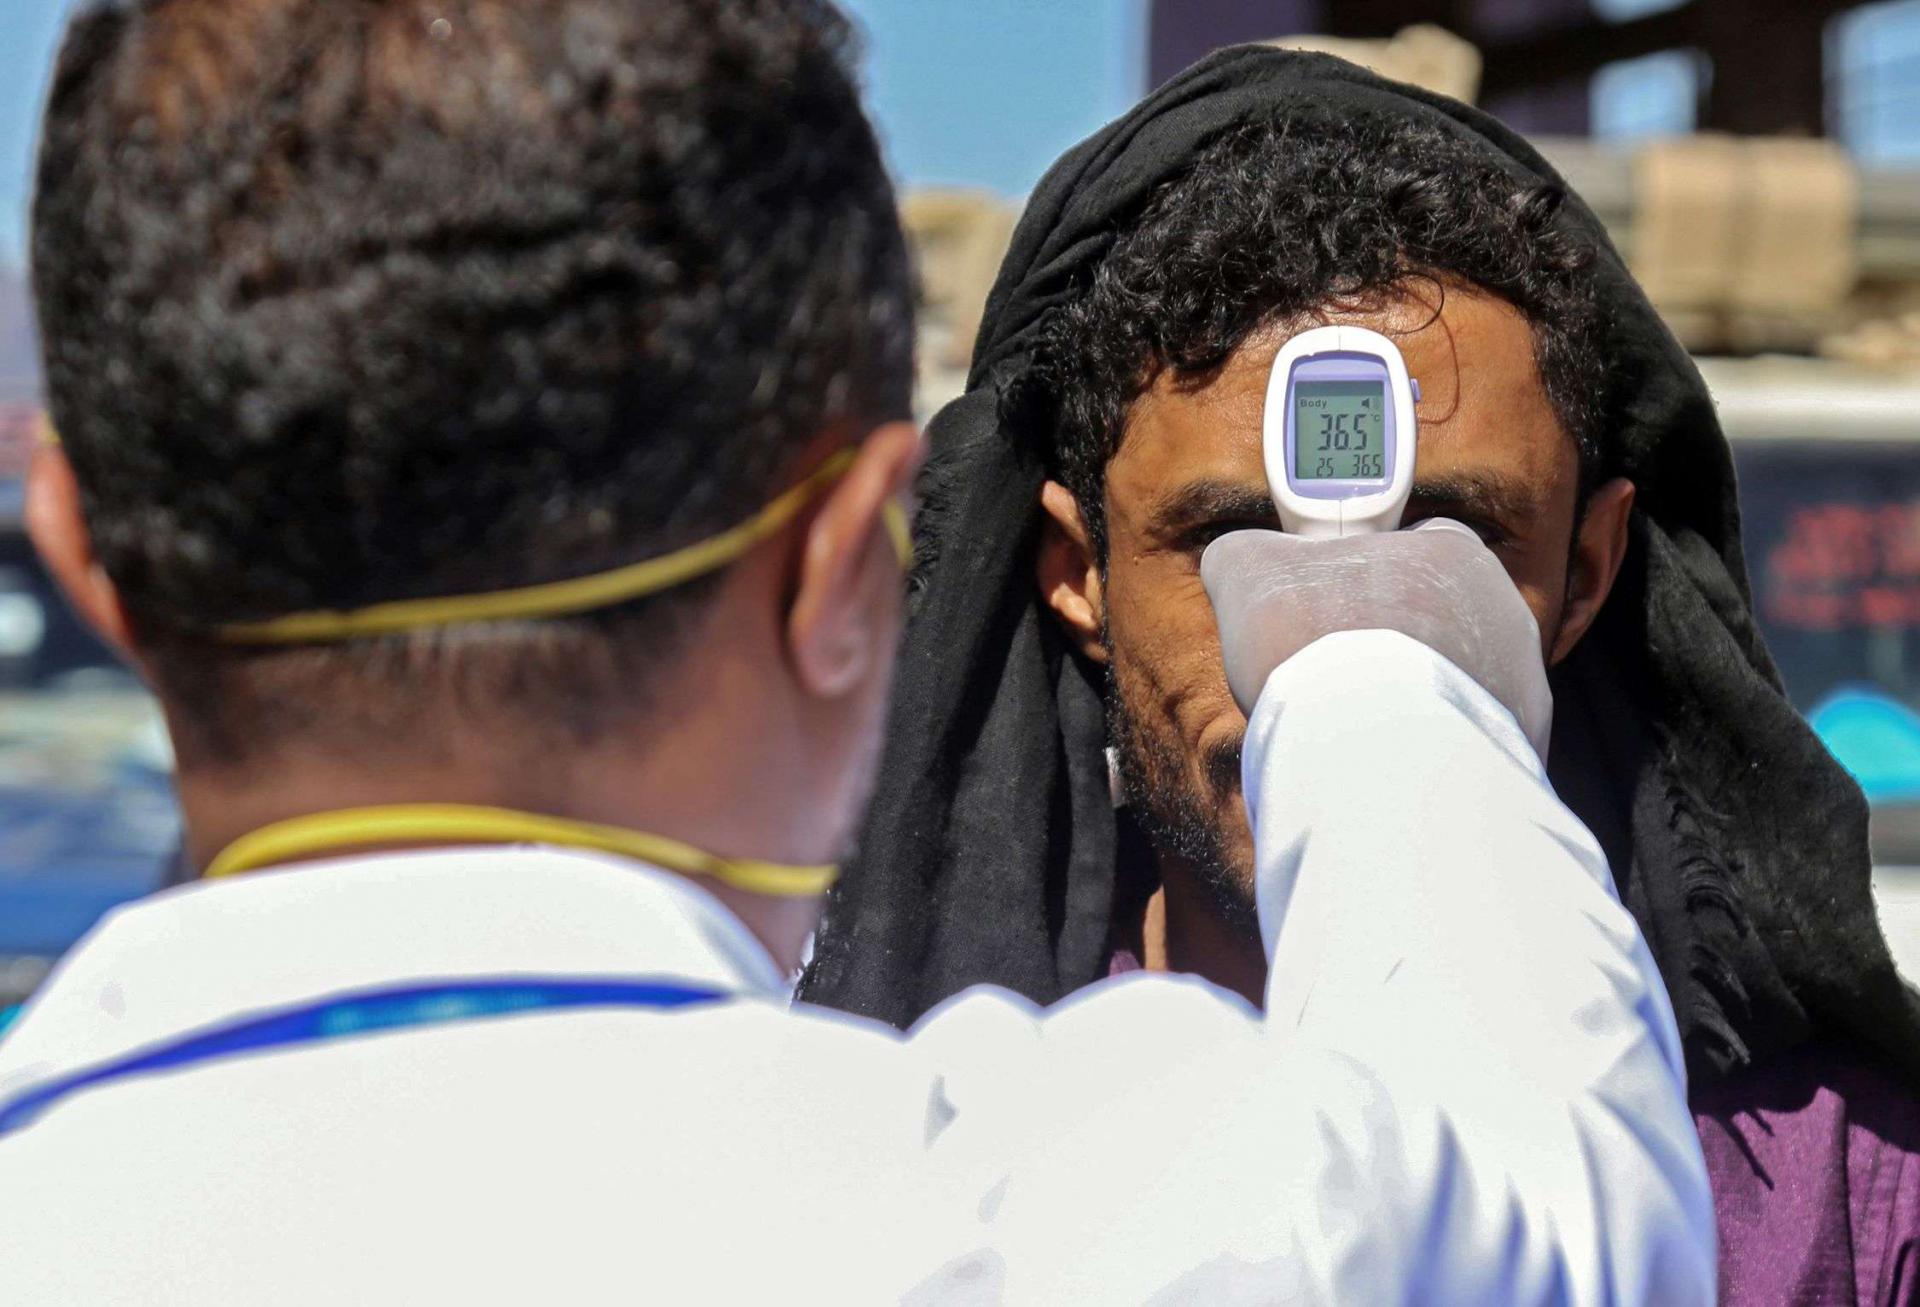 اليمن كانت ساحة لانتشار اوبئة مثل الكوليرا بسبب تداعيات الحرب